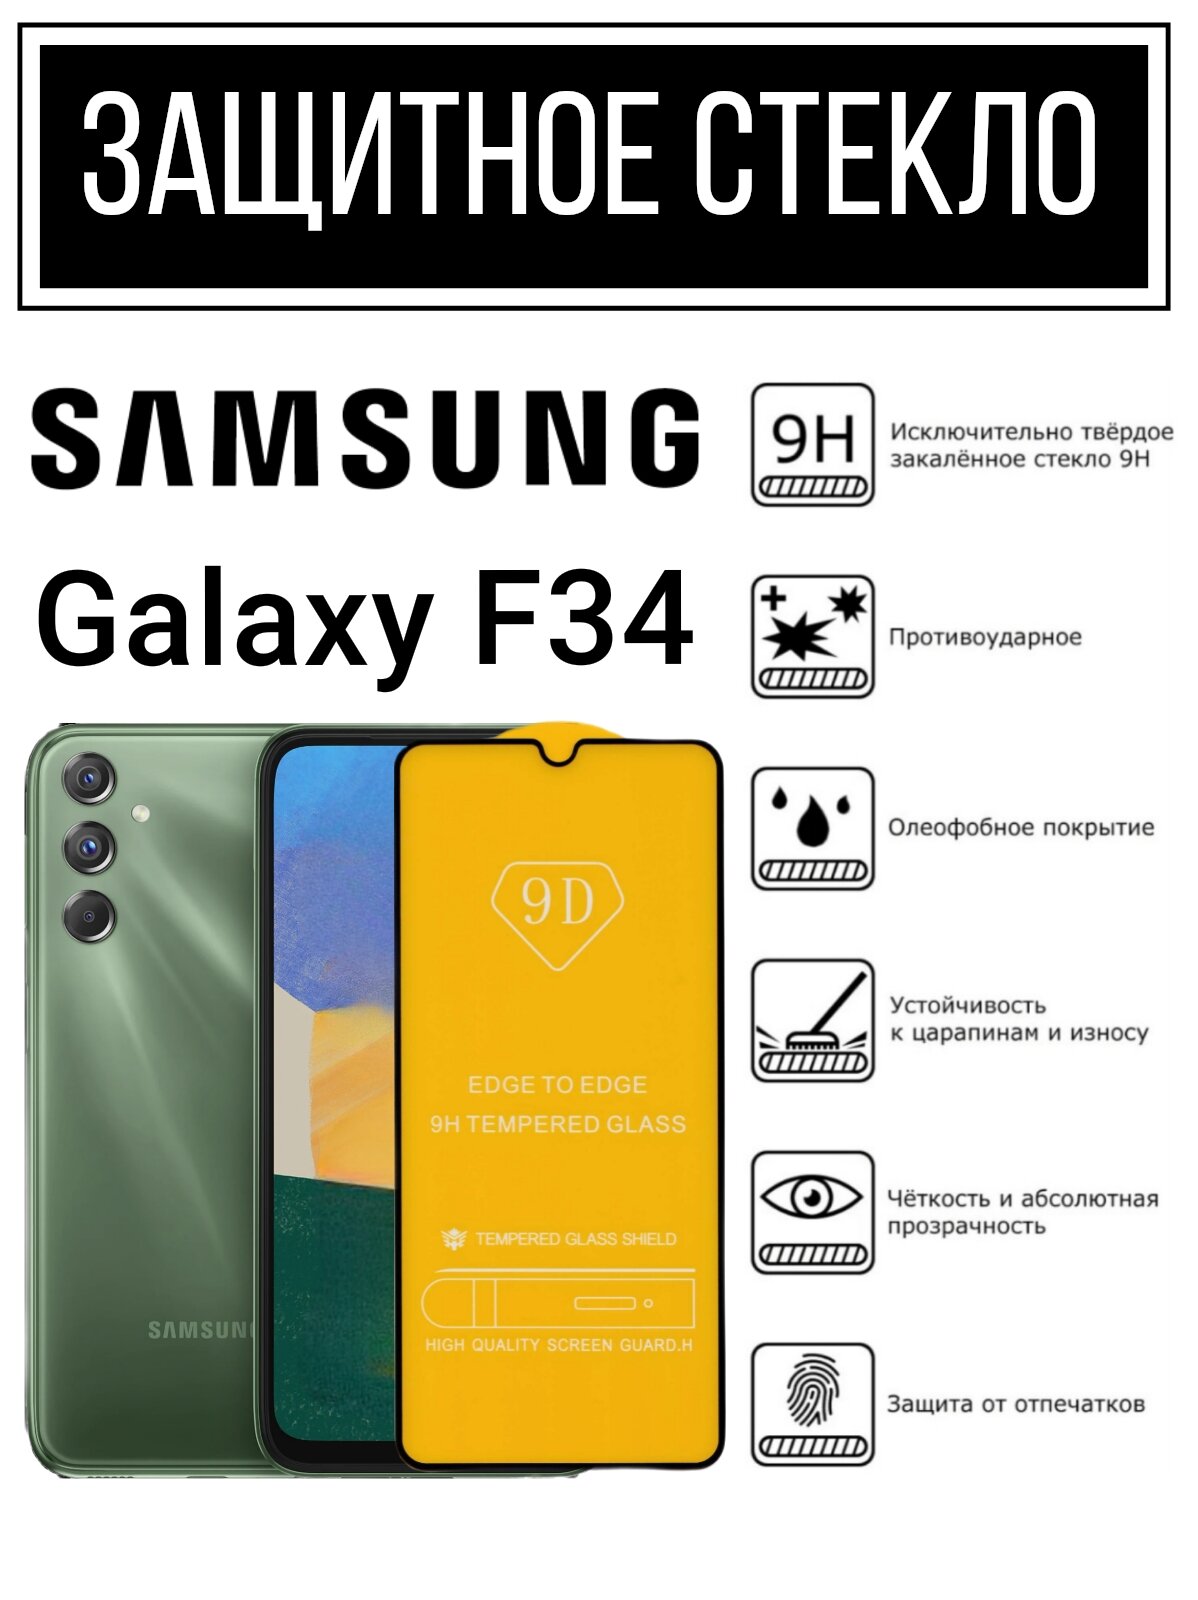 Противоударное закалённое защитное стекло для смартфонов Samsung Galaxy F34/Самсунг Галакси Ф34